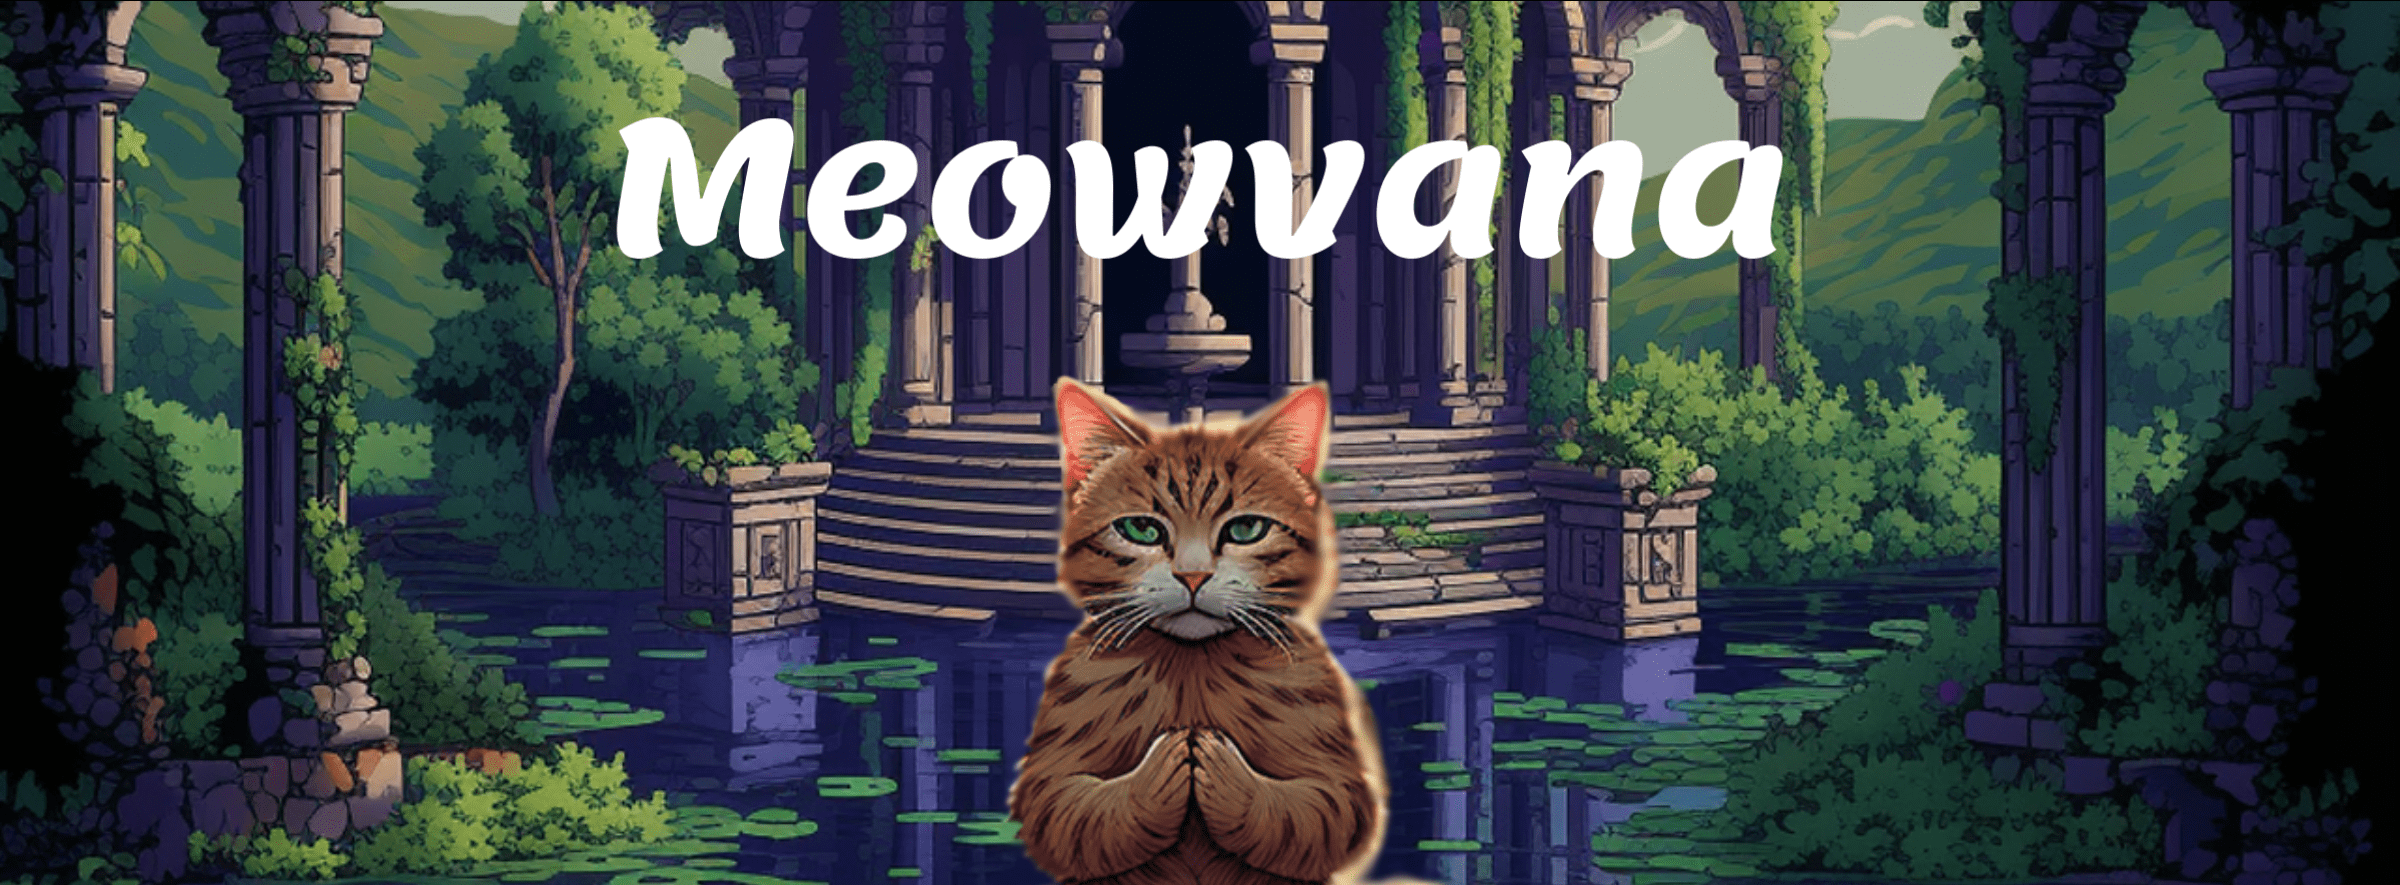 Meowvana